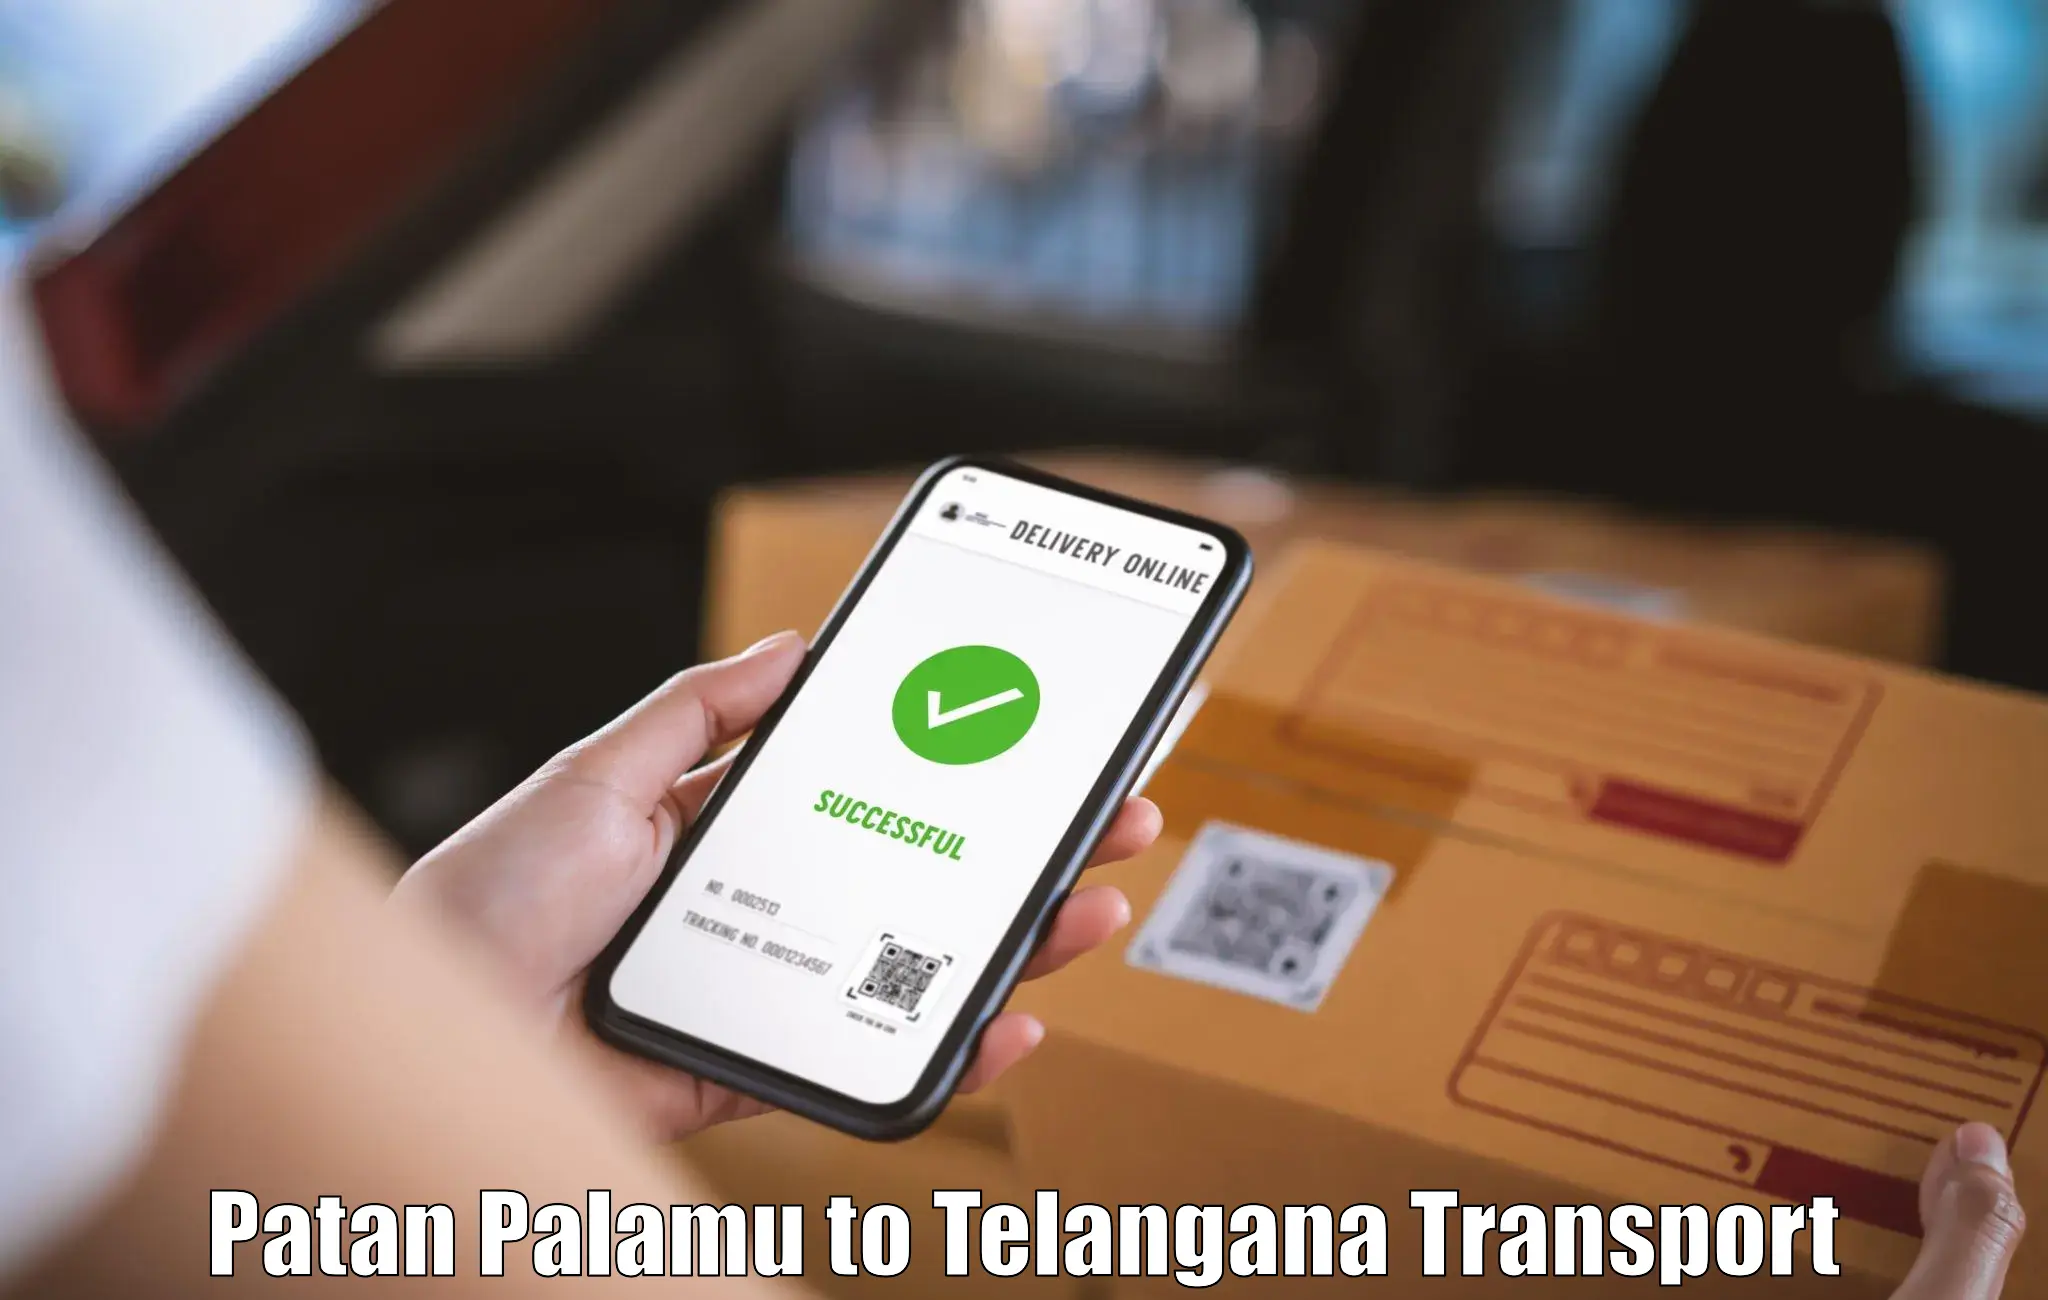 Scooty transport charges Patan Palamu to Mudigonda